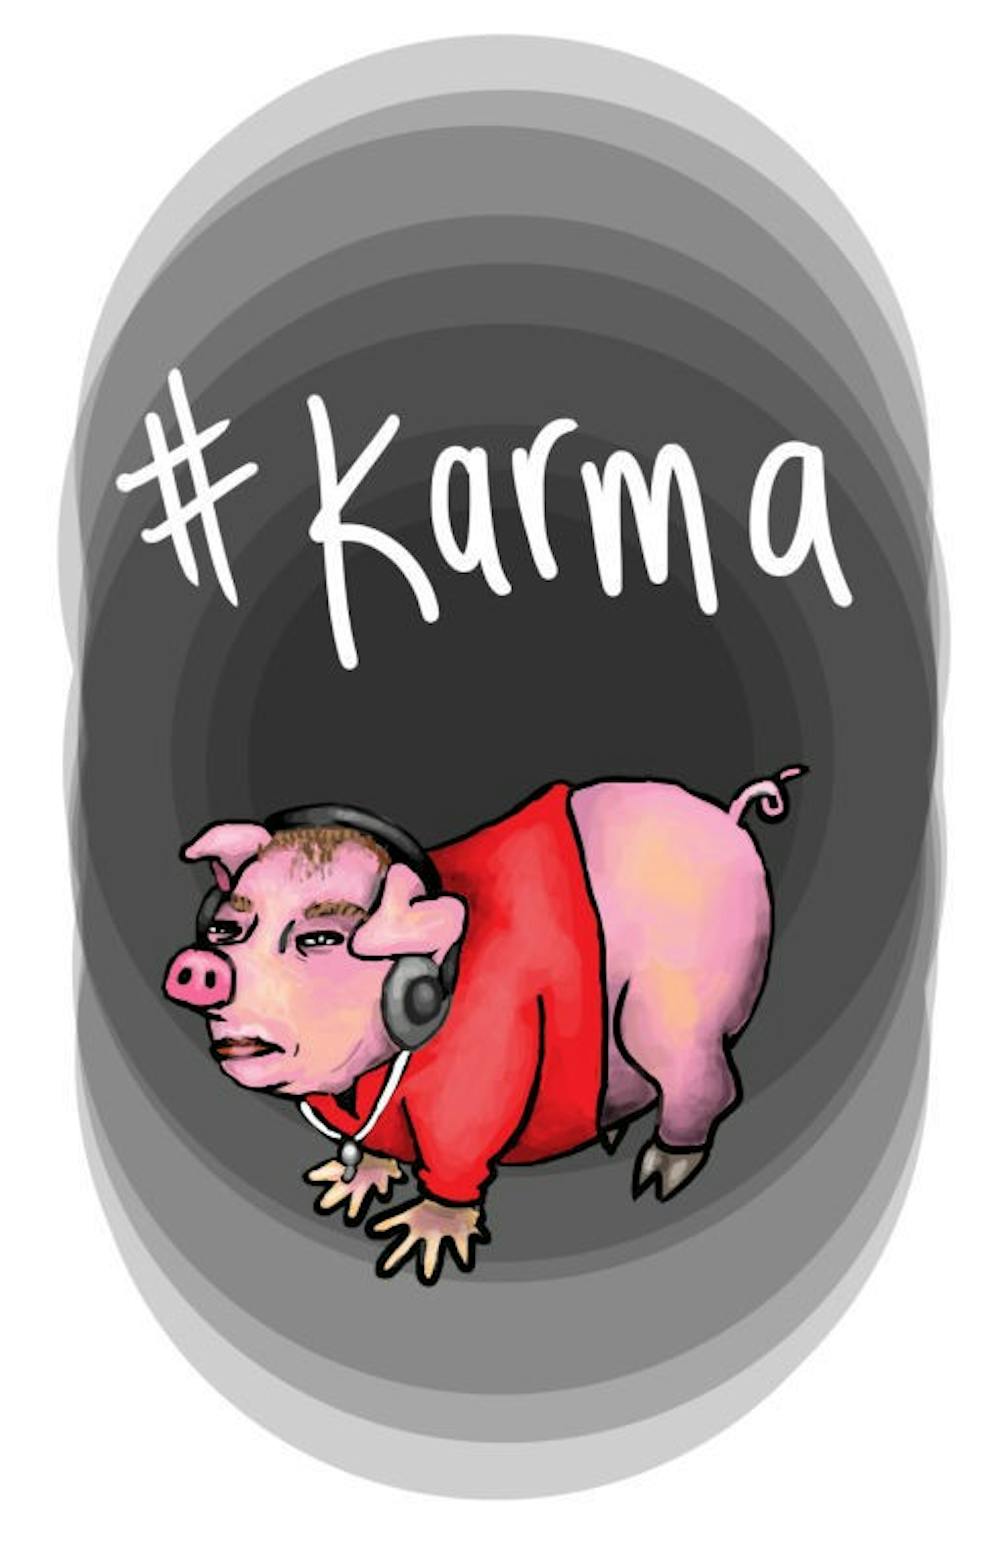 #karma